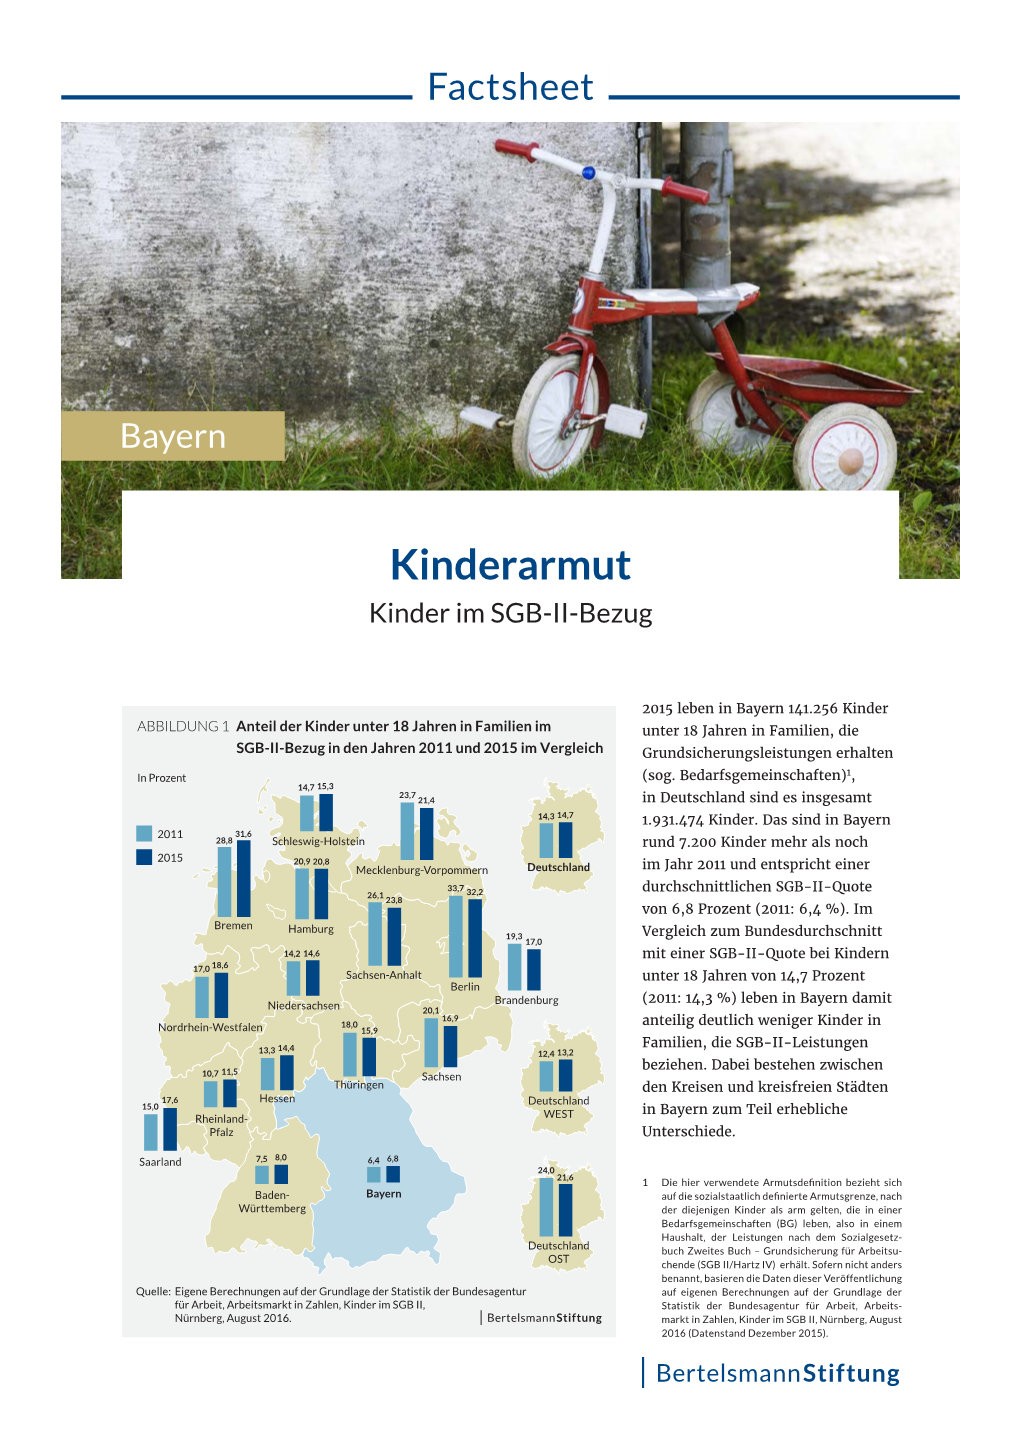 Kinderarmut – Kinder Im SGB-II-Bezug in Bayern